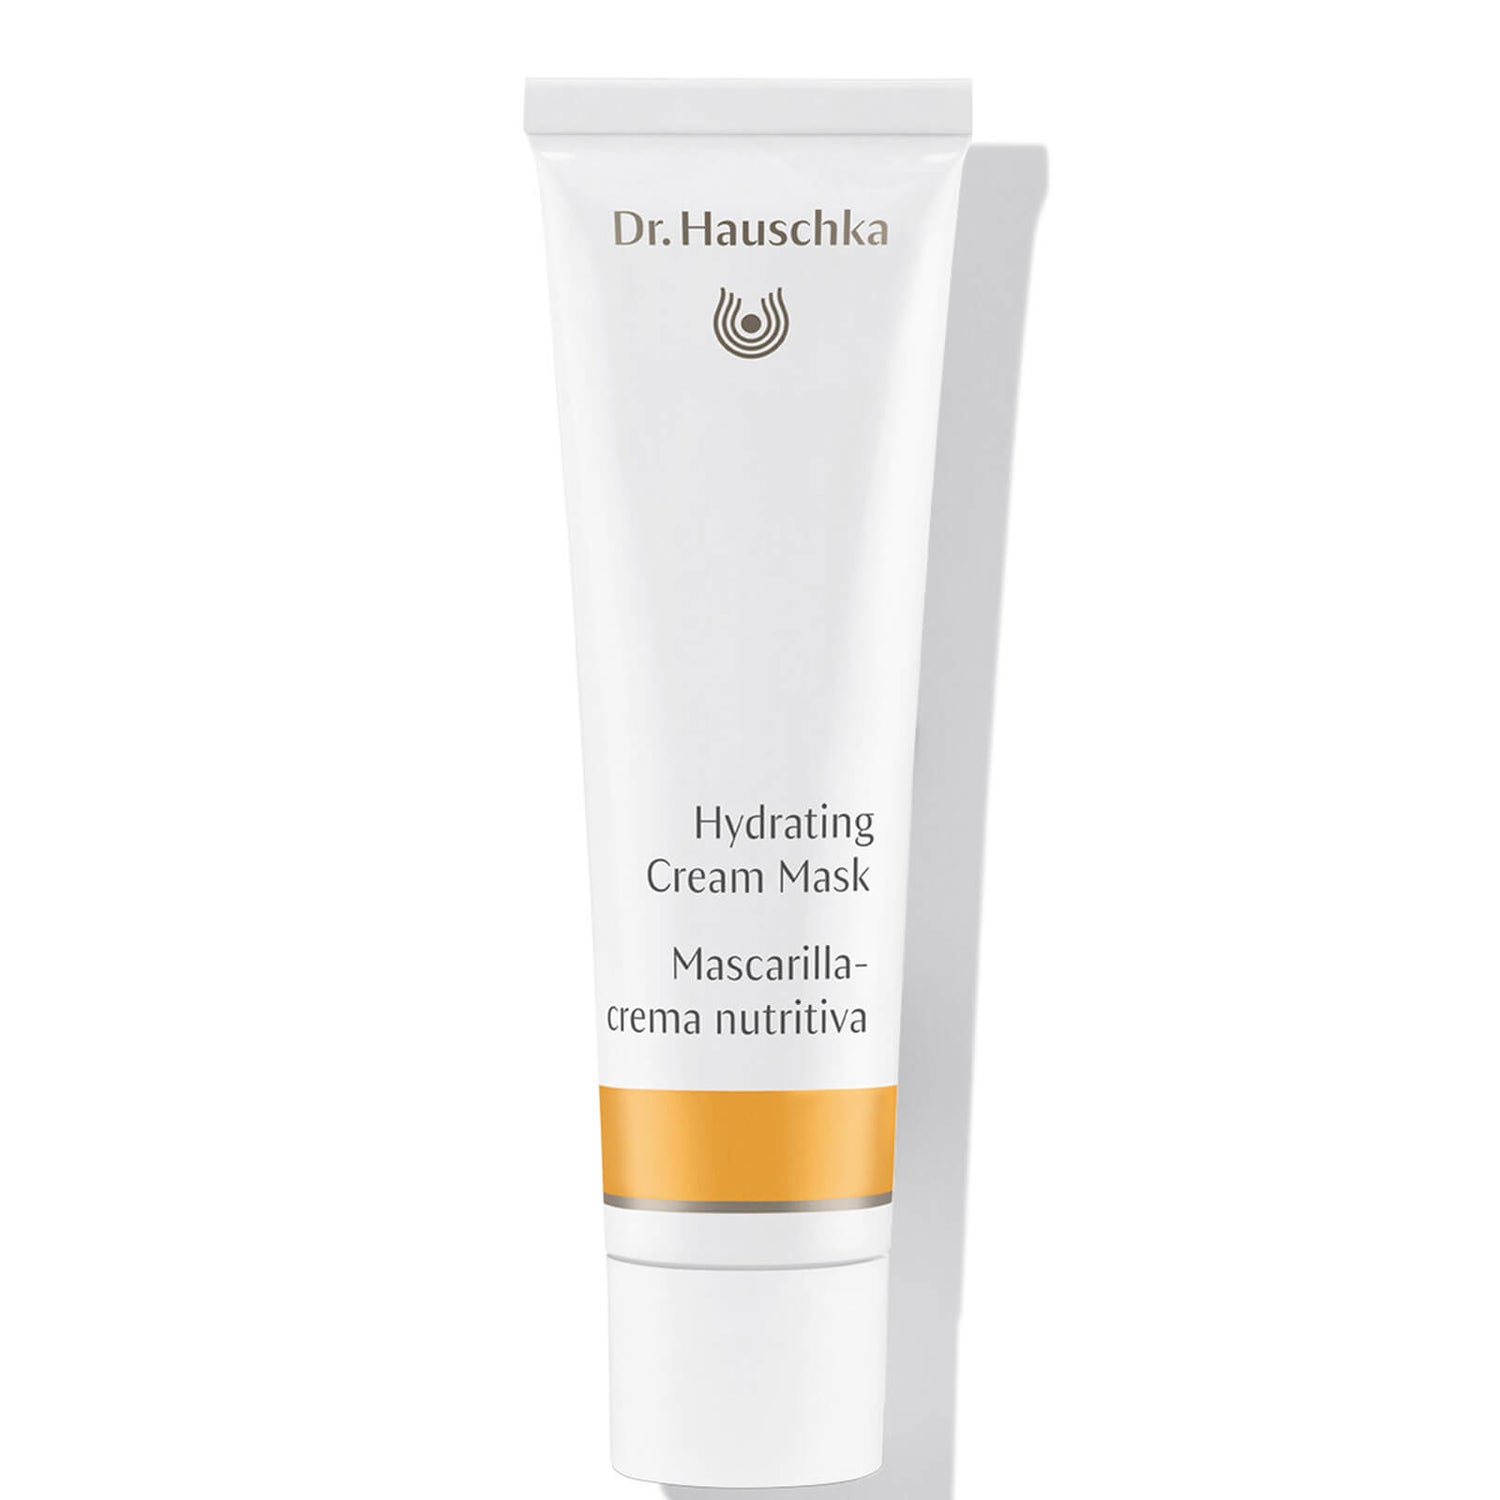 Dr. Hauschka Hydrating Cream Mask (1.0 fl. oz.)